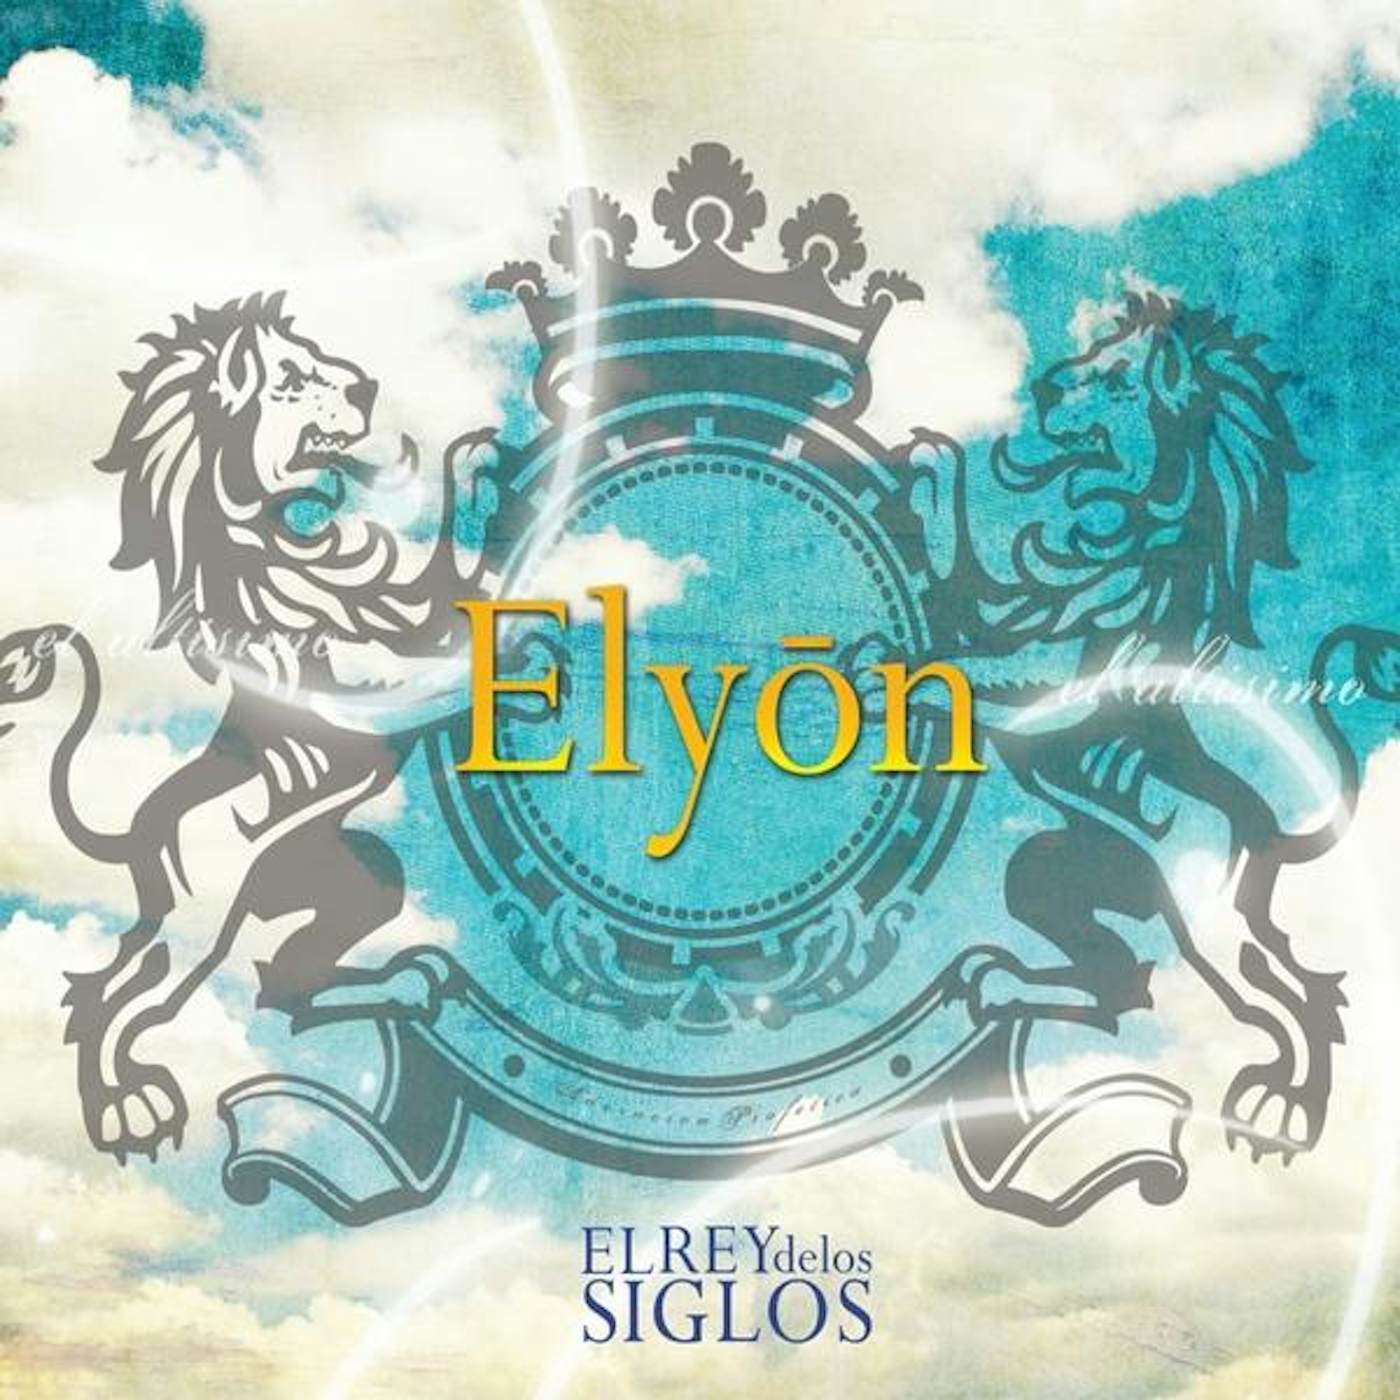 Elyon EL REY DE LOS SIGLOS CD